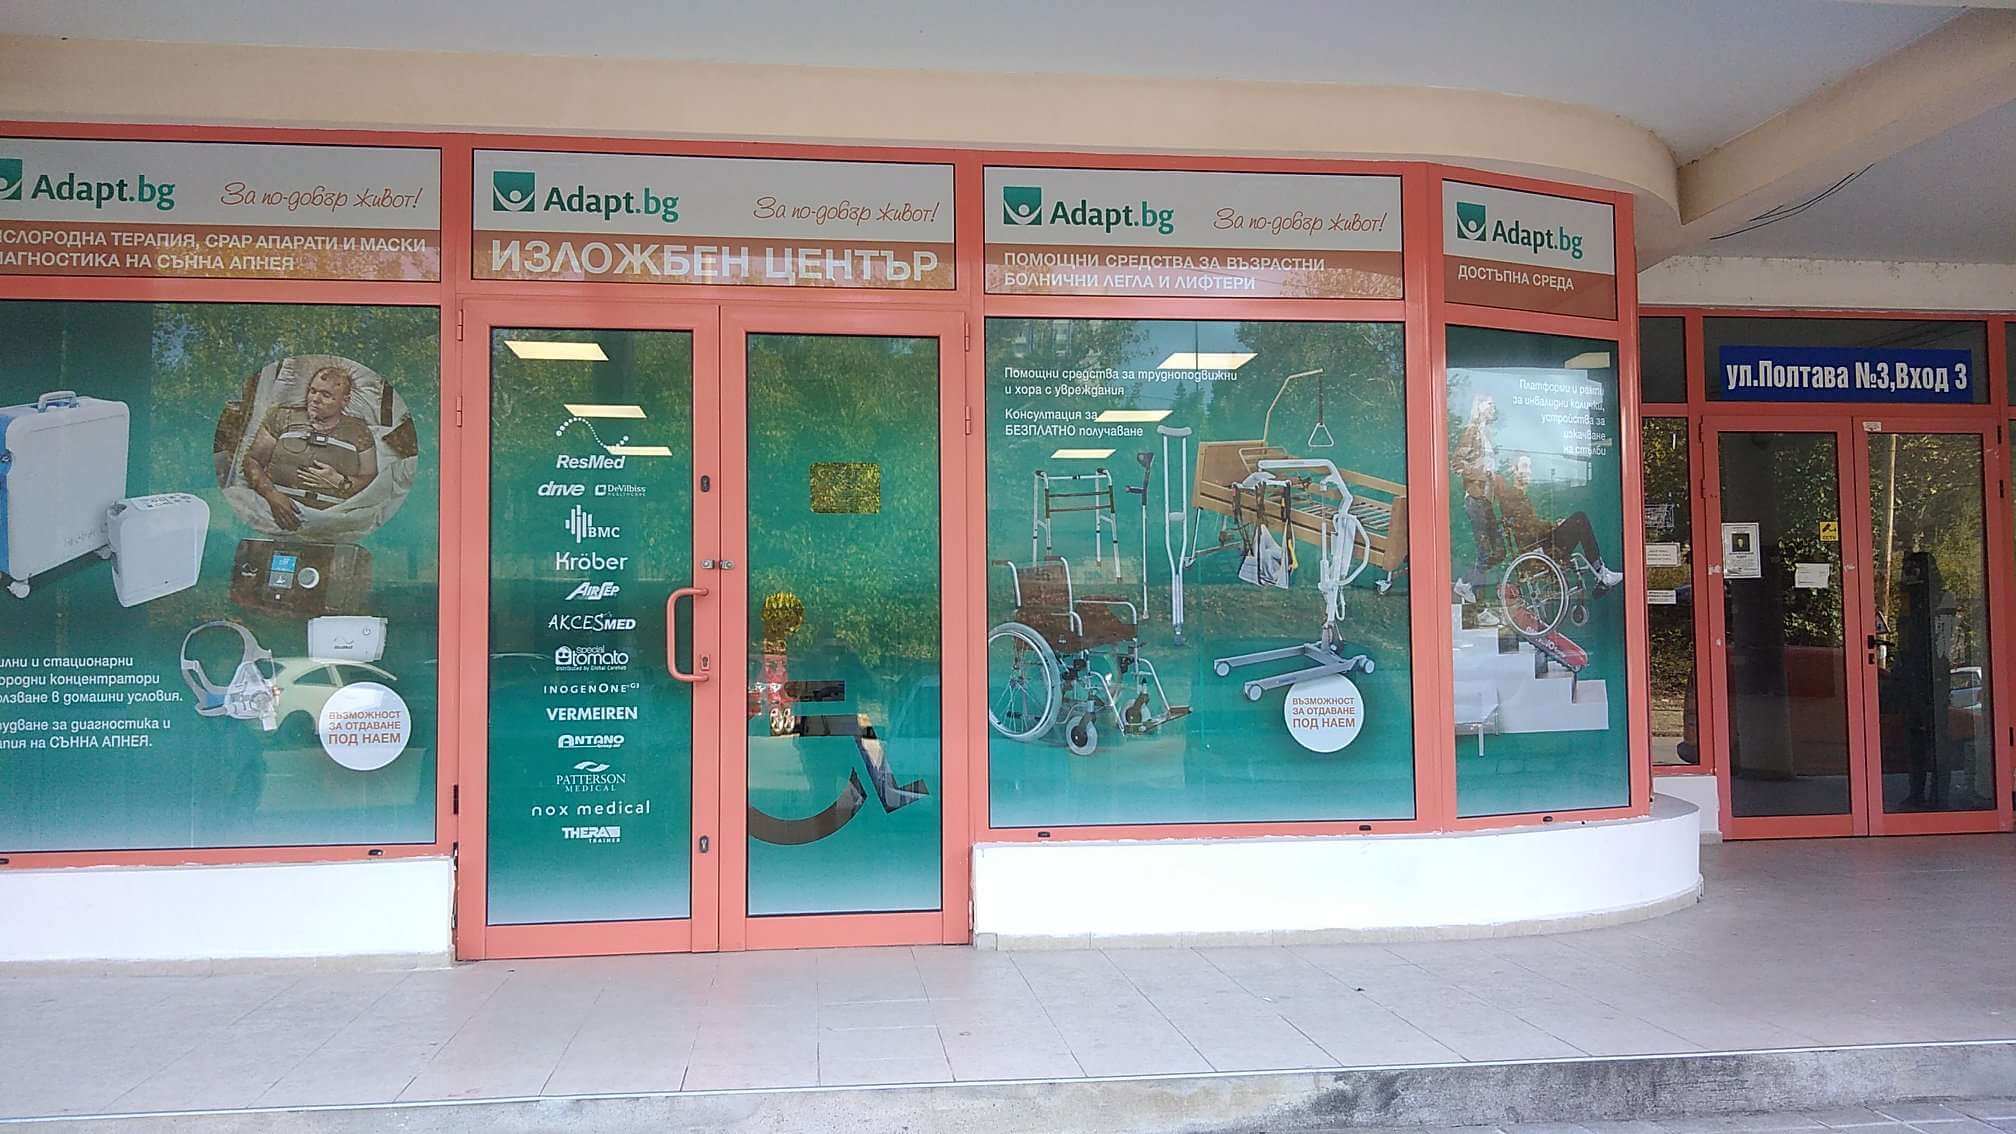 Адапт Бг отвори магазин във Велико Търново - помощни средства за хора с увреждания РЗОК / НЗОК финансиране